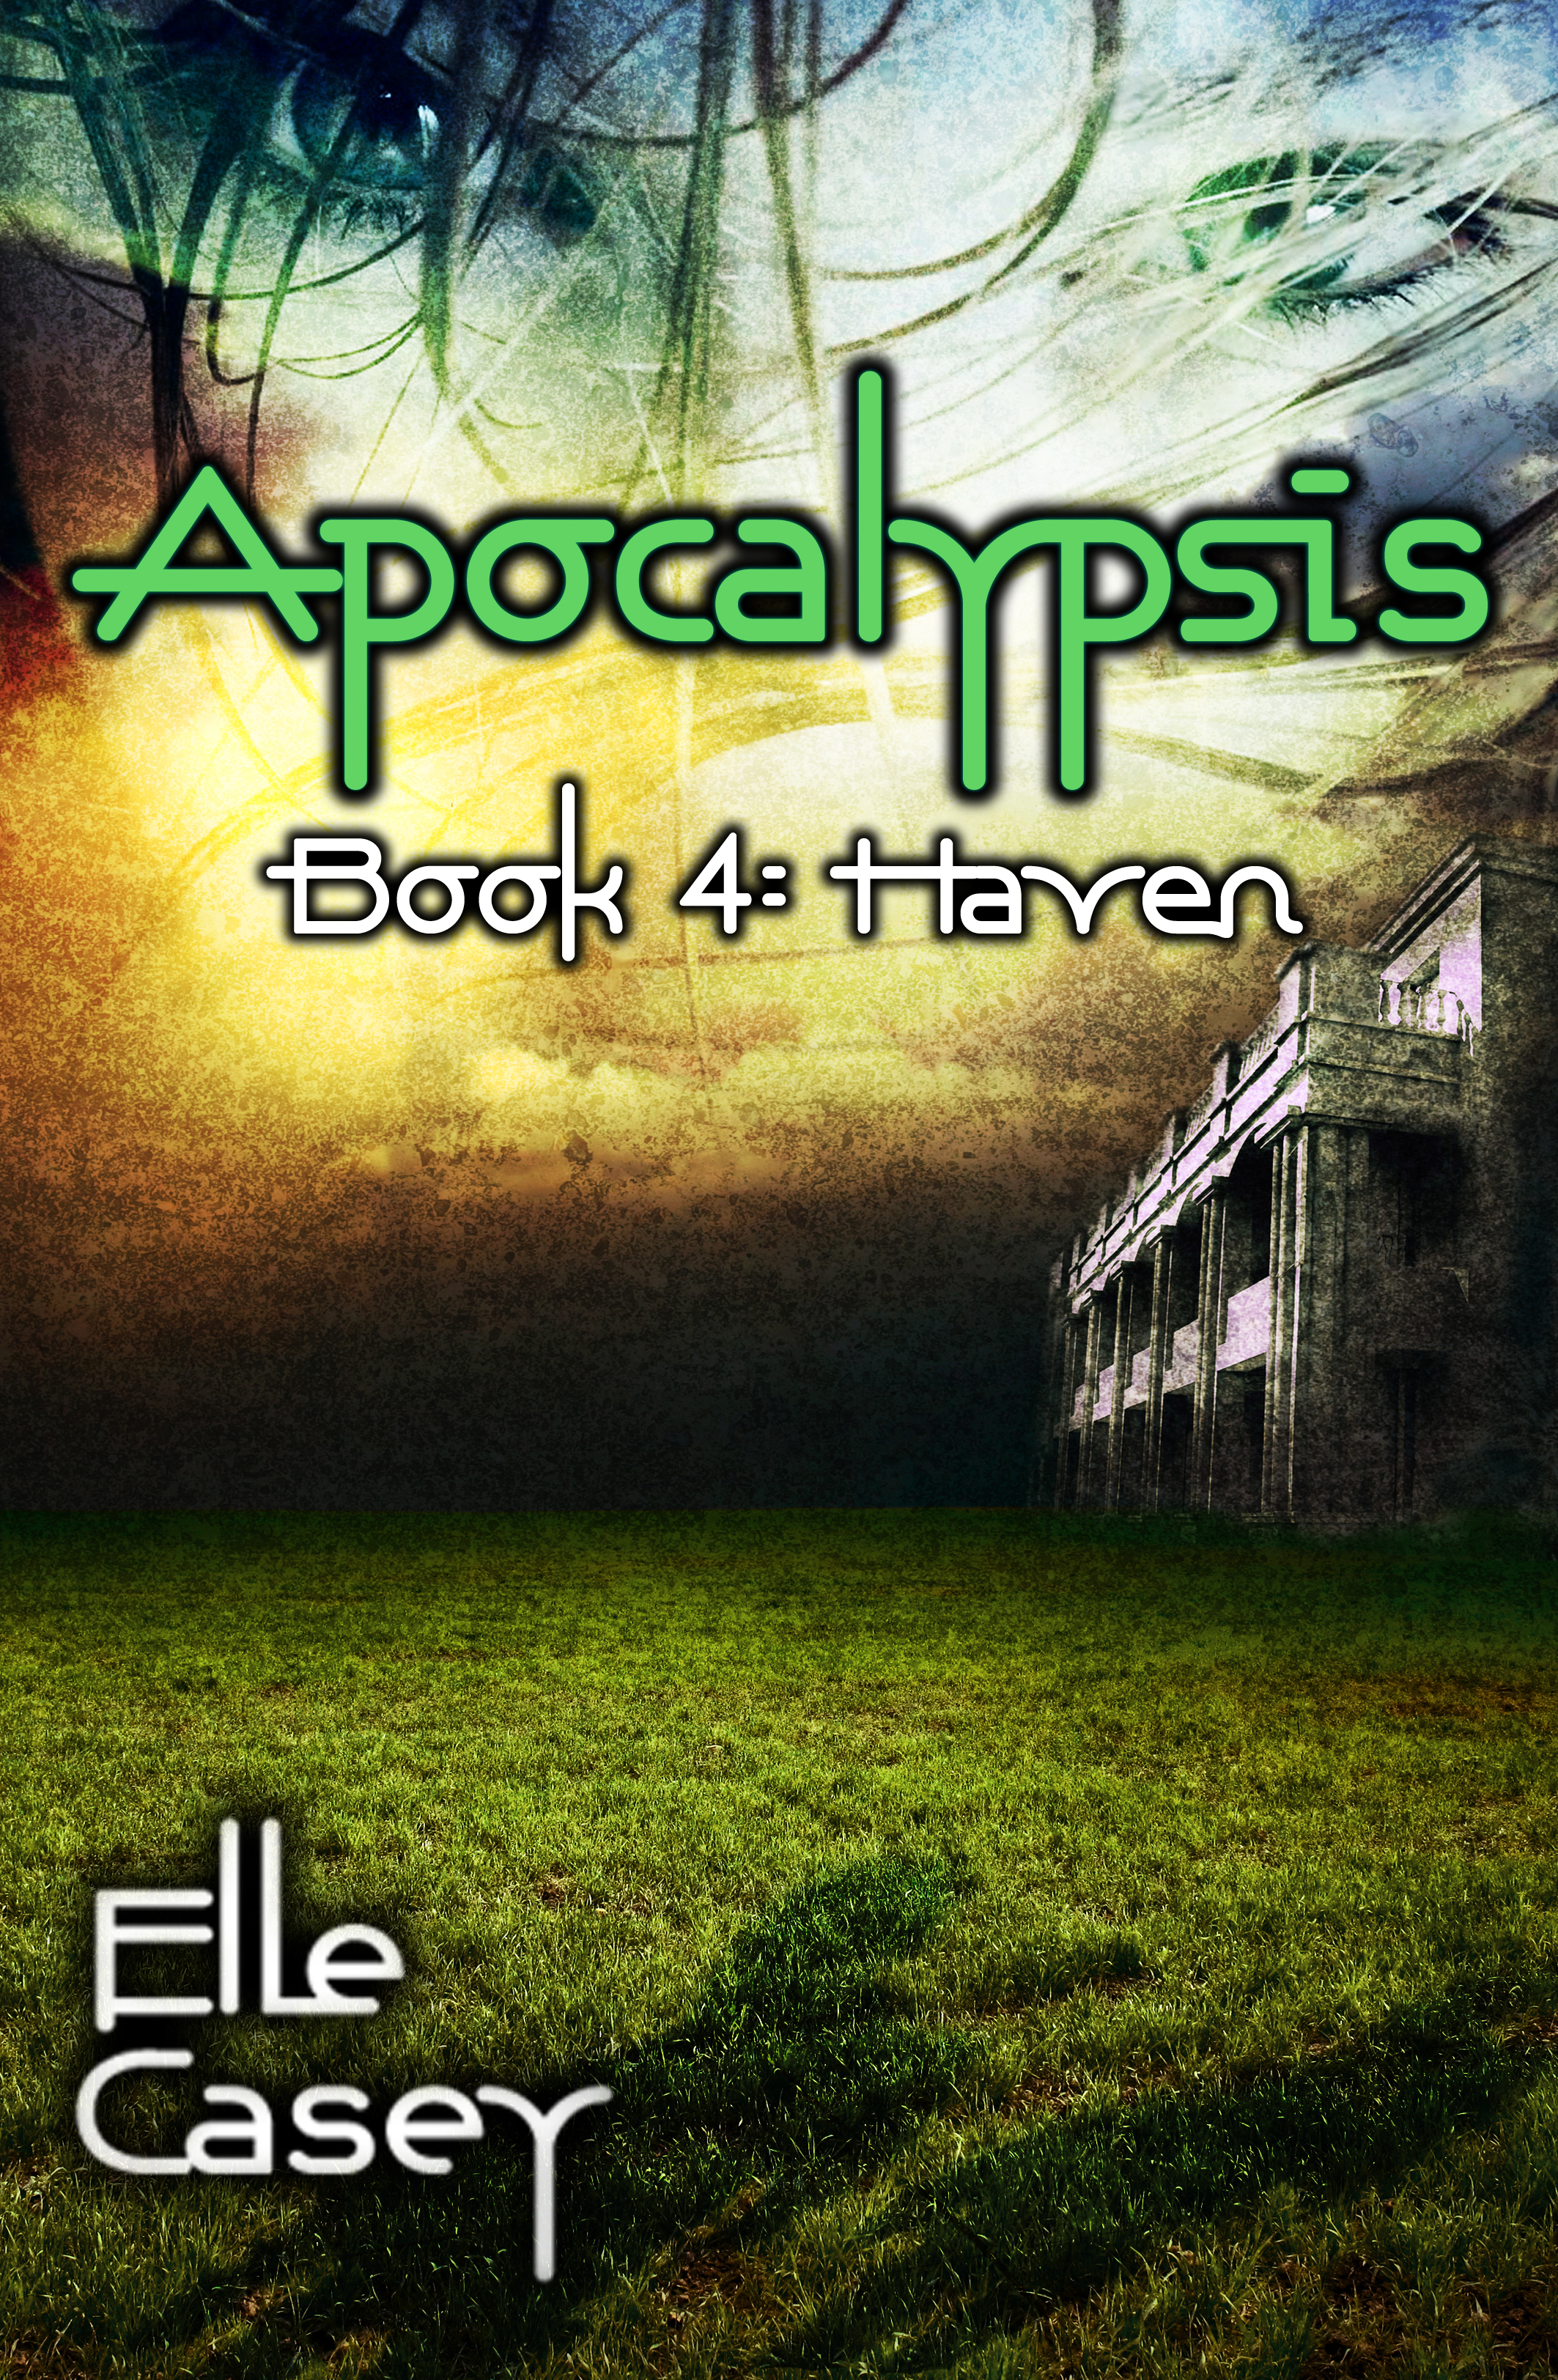 Cover Reveal!  Apocalypsis: Book 4 (HAVEN)